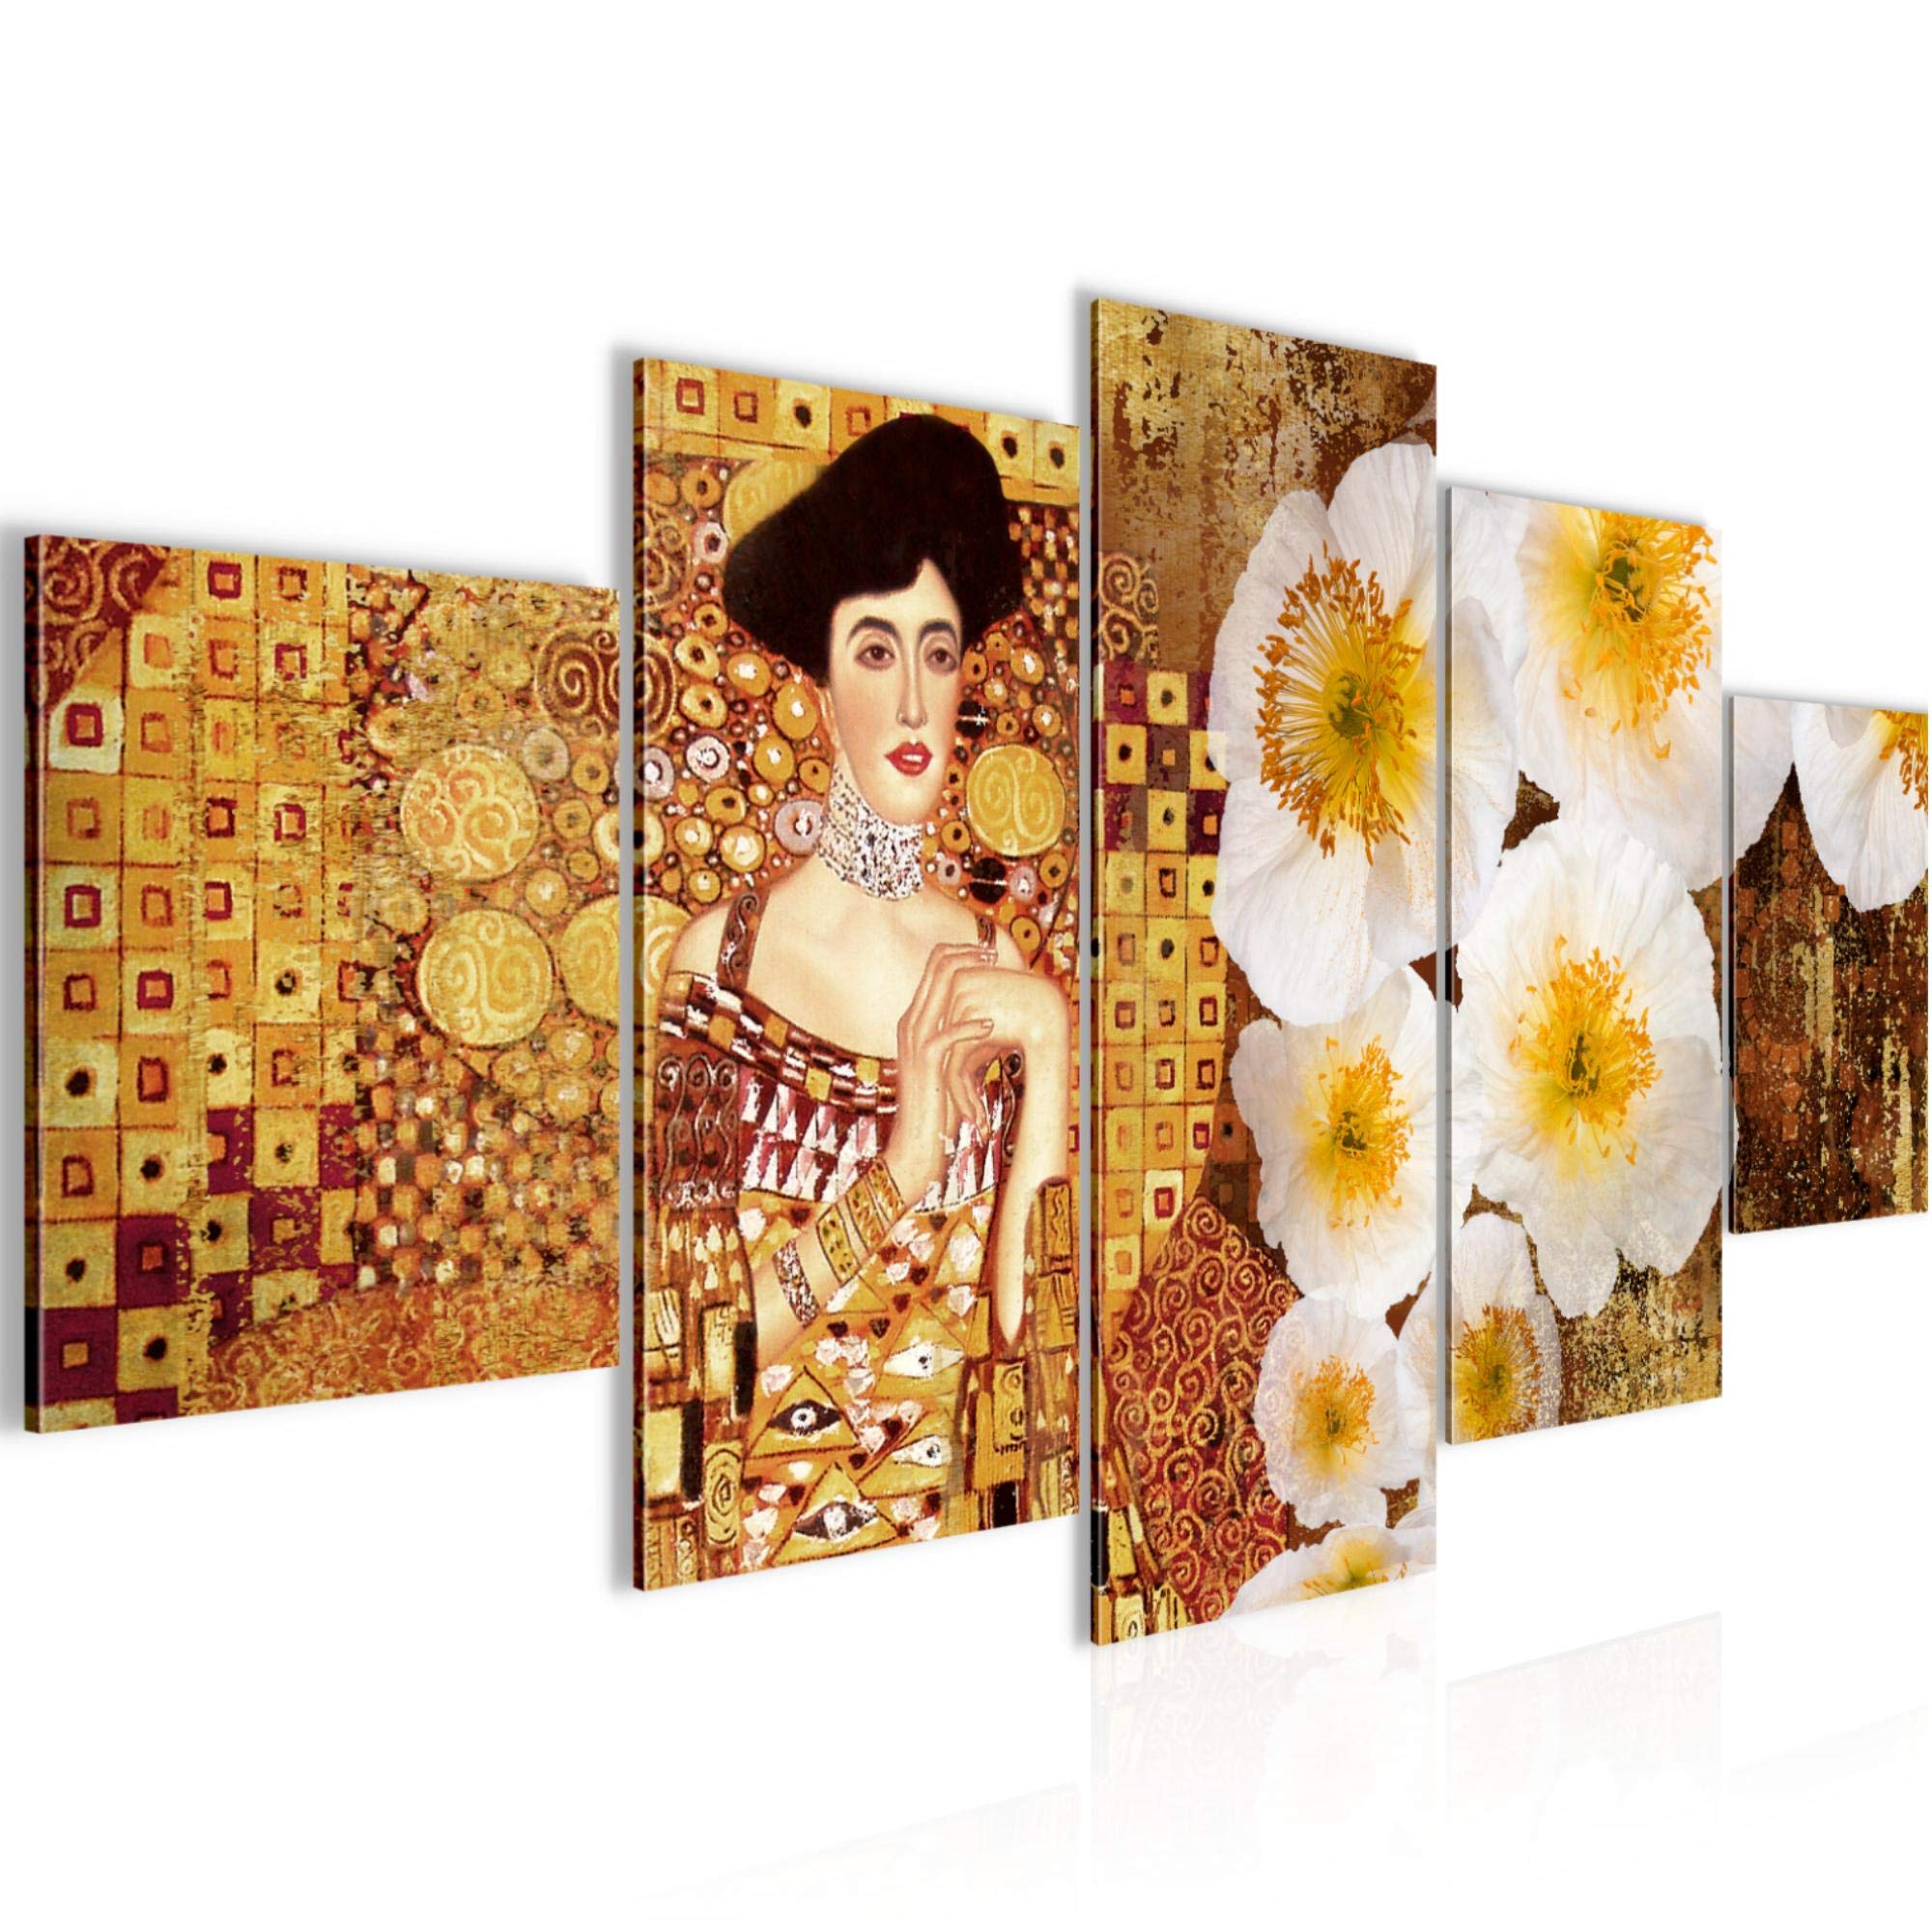 Runa Art Wandbilder Gustav Klimt 5 Teilig Bild auf Vlies Leinwand Deko Wohnzimmer Frau Blumen Gold 019552a